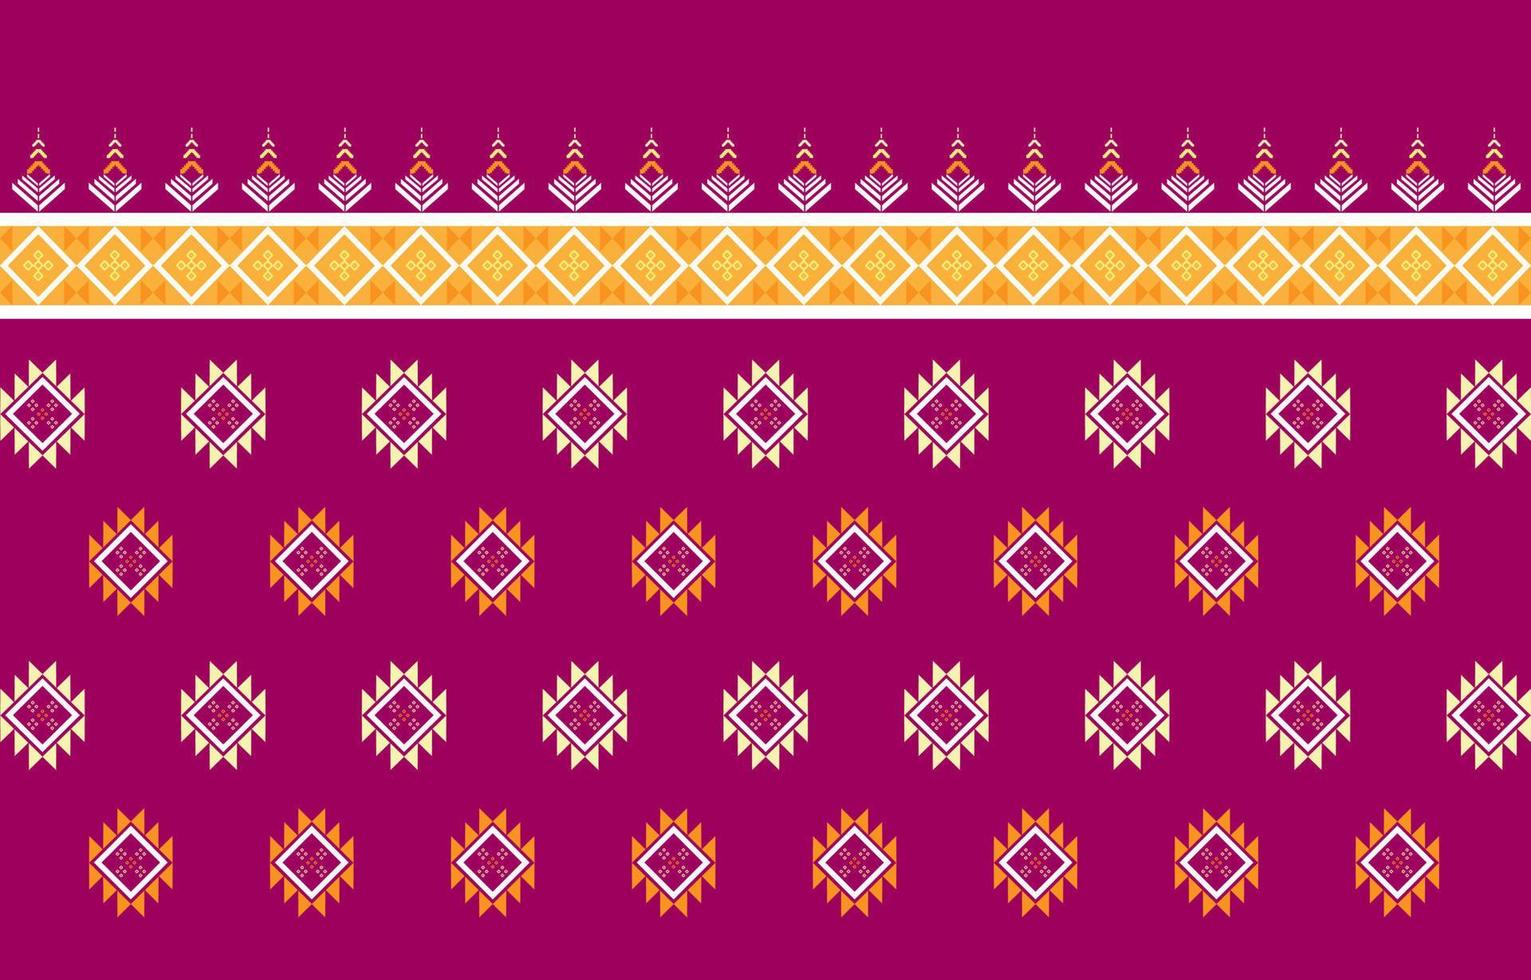 design tradicional de padrão oriental étnico geométrico para roupas, tecidos, livros e plantas. padrões geométricos e tribais abstratos, padrões geométricos de tecido local de design de uso vetor